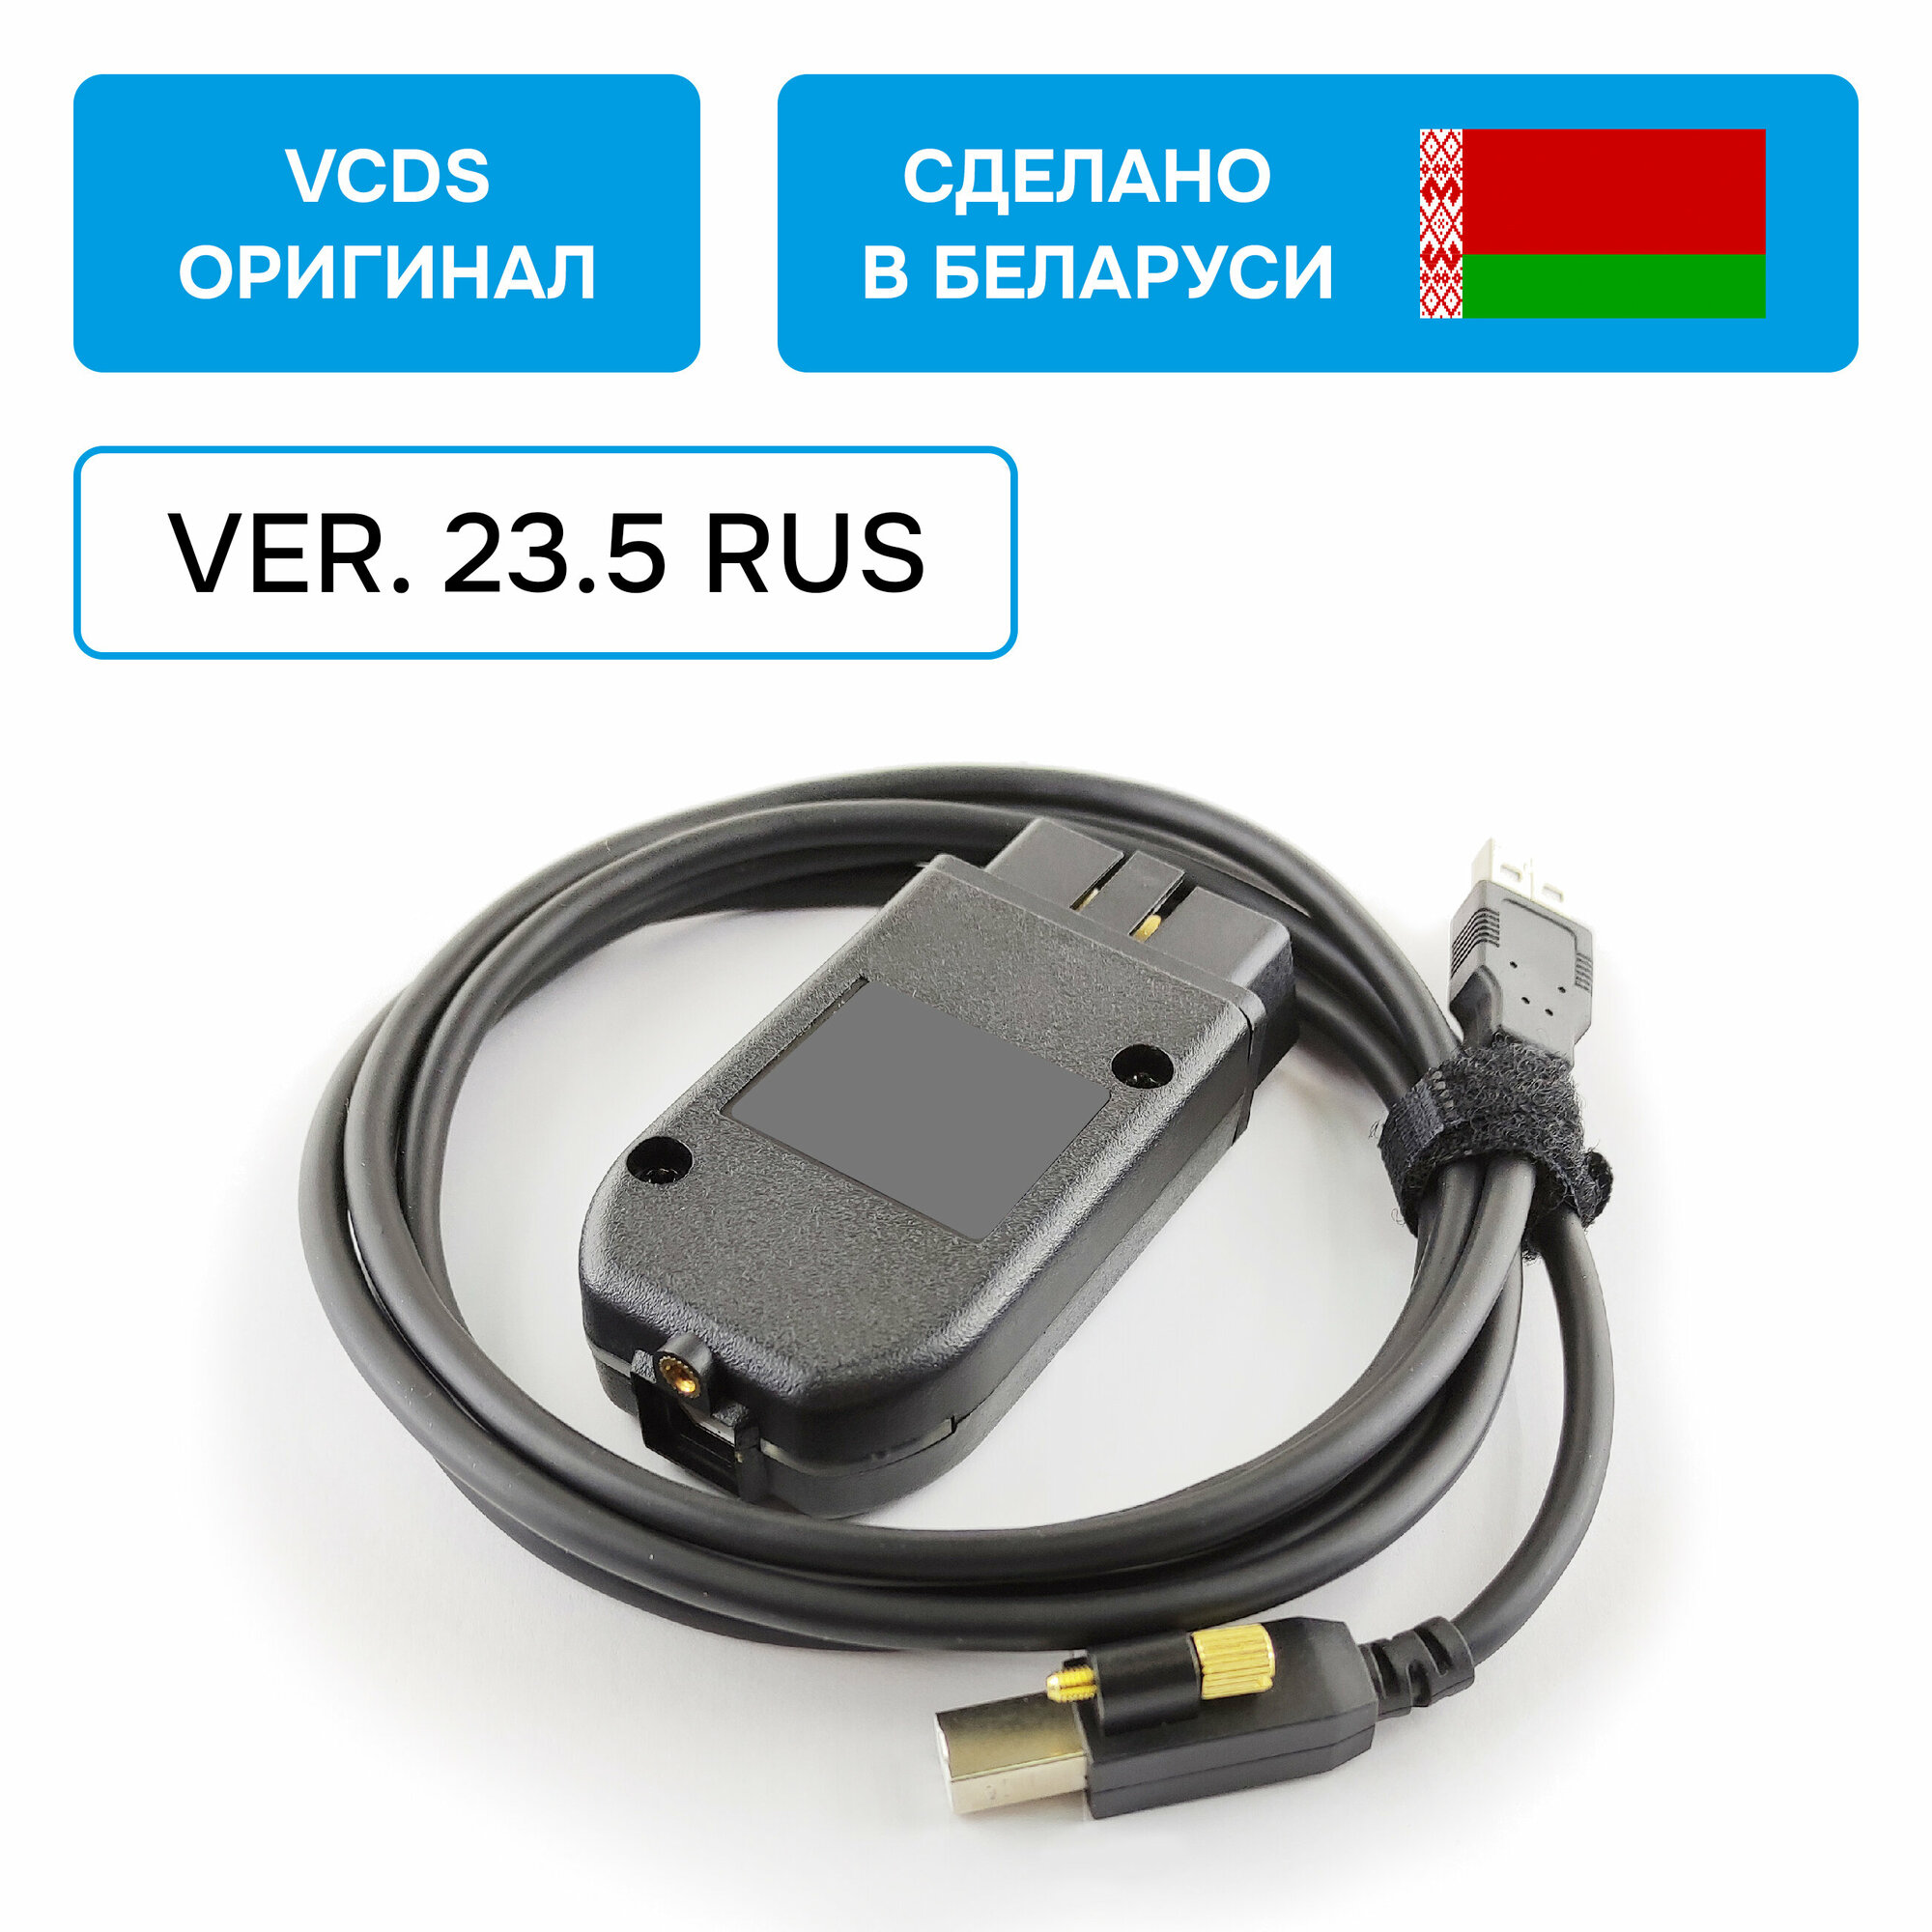 Адаптер Вася Диагност VCDS для VAG (оригинал производство Беларусь). Версия 22.10 Rus